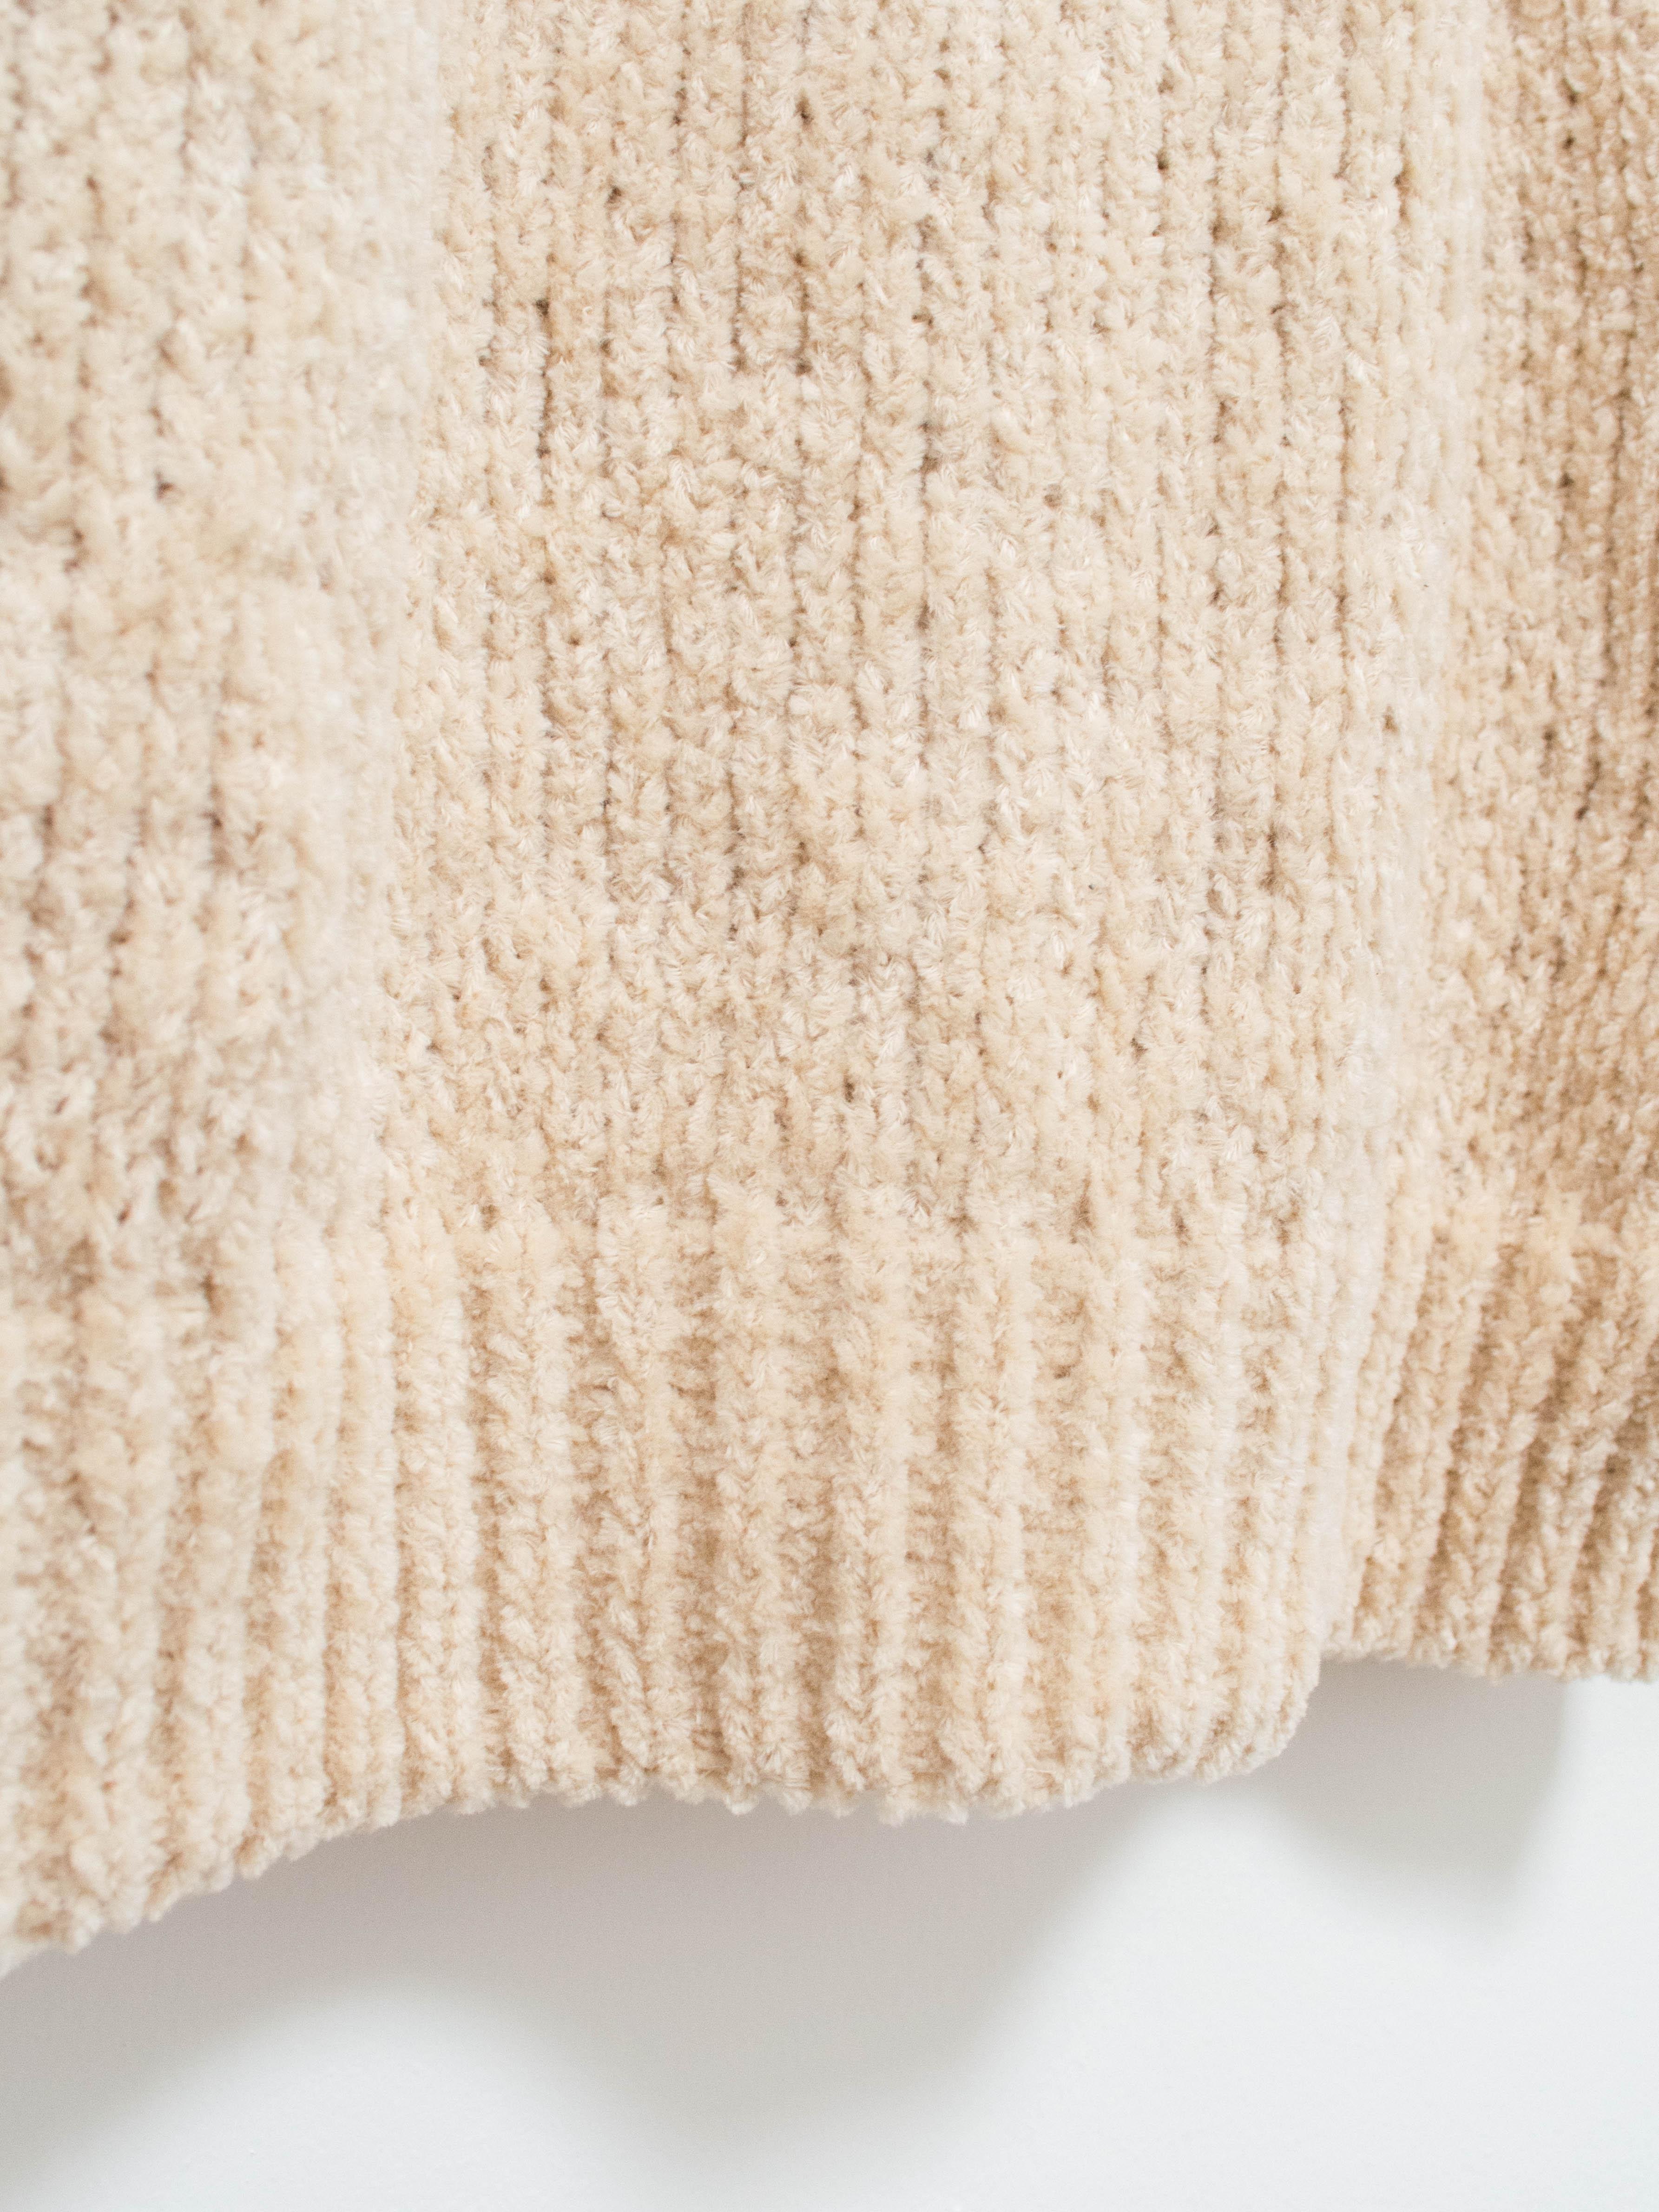 Namu Shop - ts(s) Hand Dyed Cotton Mole Yarn Cardigan - Natural